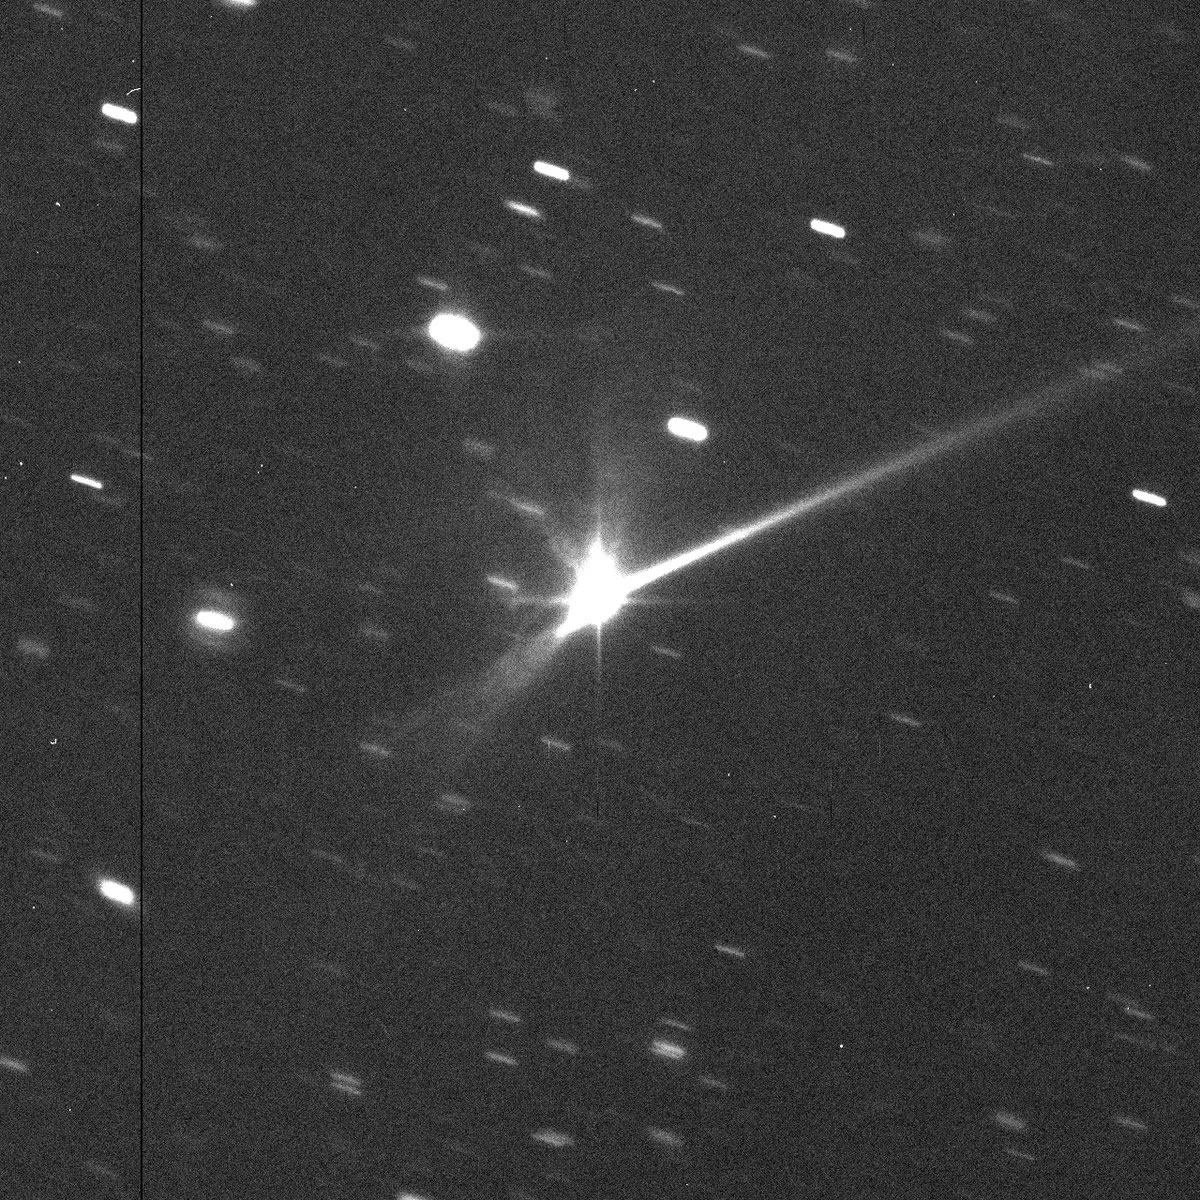 欧空局NEOCC全球天文望远镜视野捕捉到DART航天器撞上小行星Dimorphos